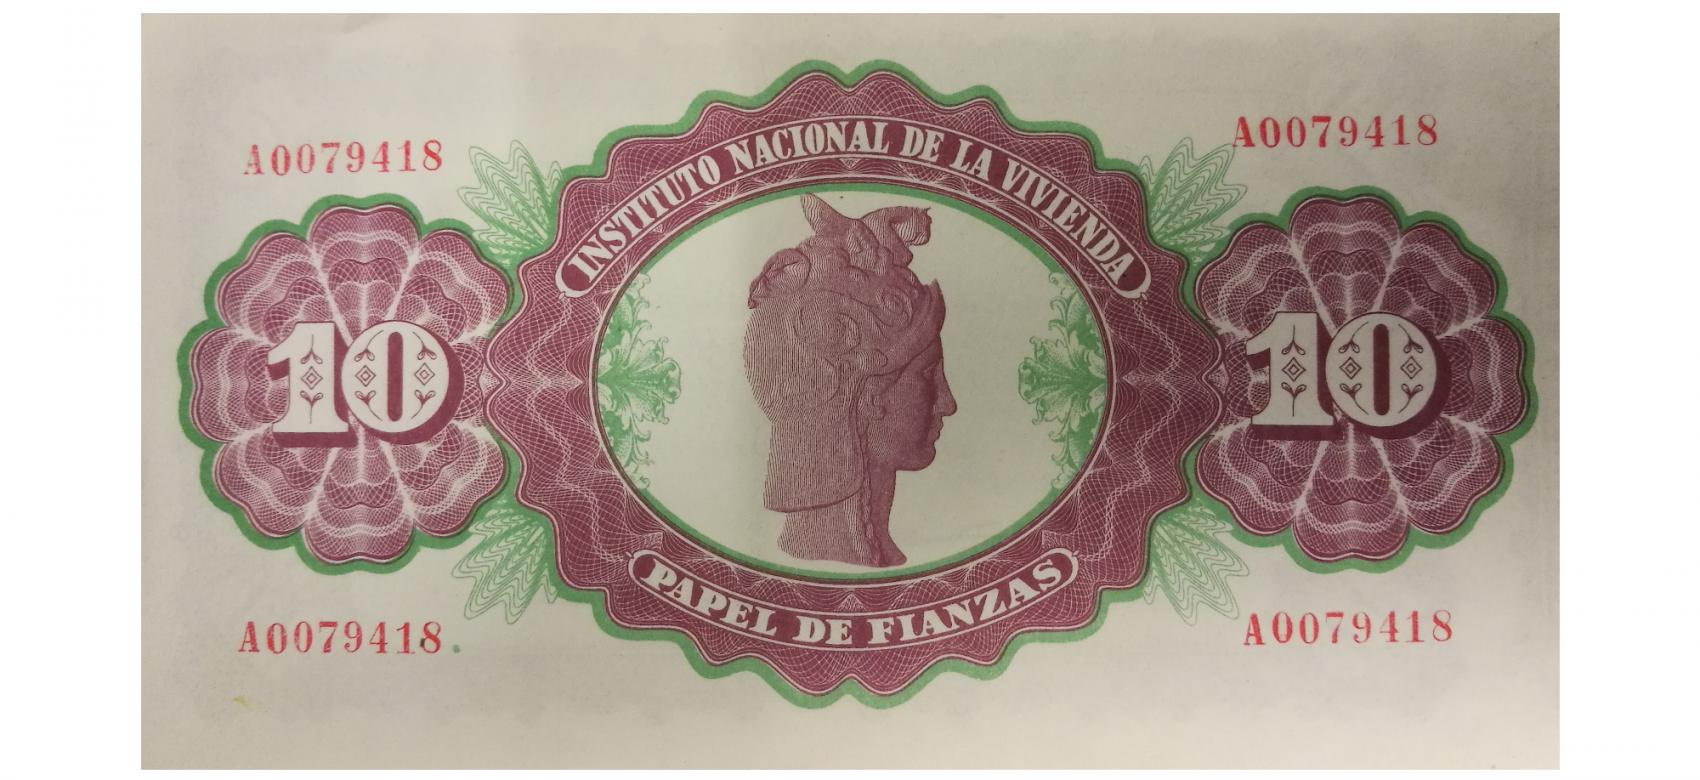 Papel de Fianzas del Estado de 10 pesetas emitidos en 1940